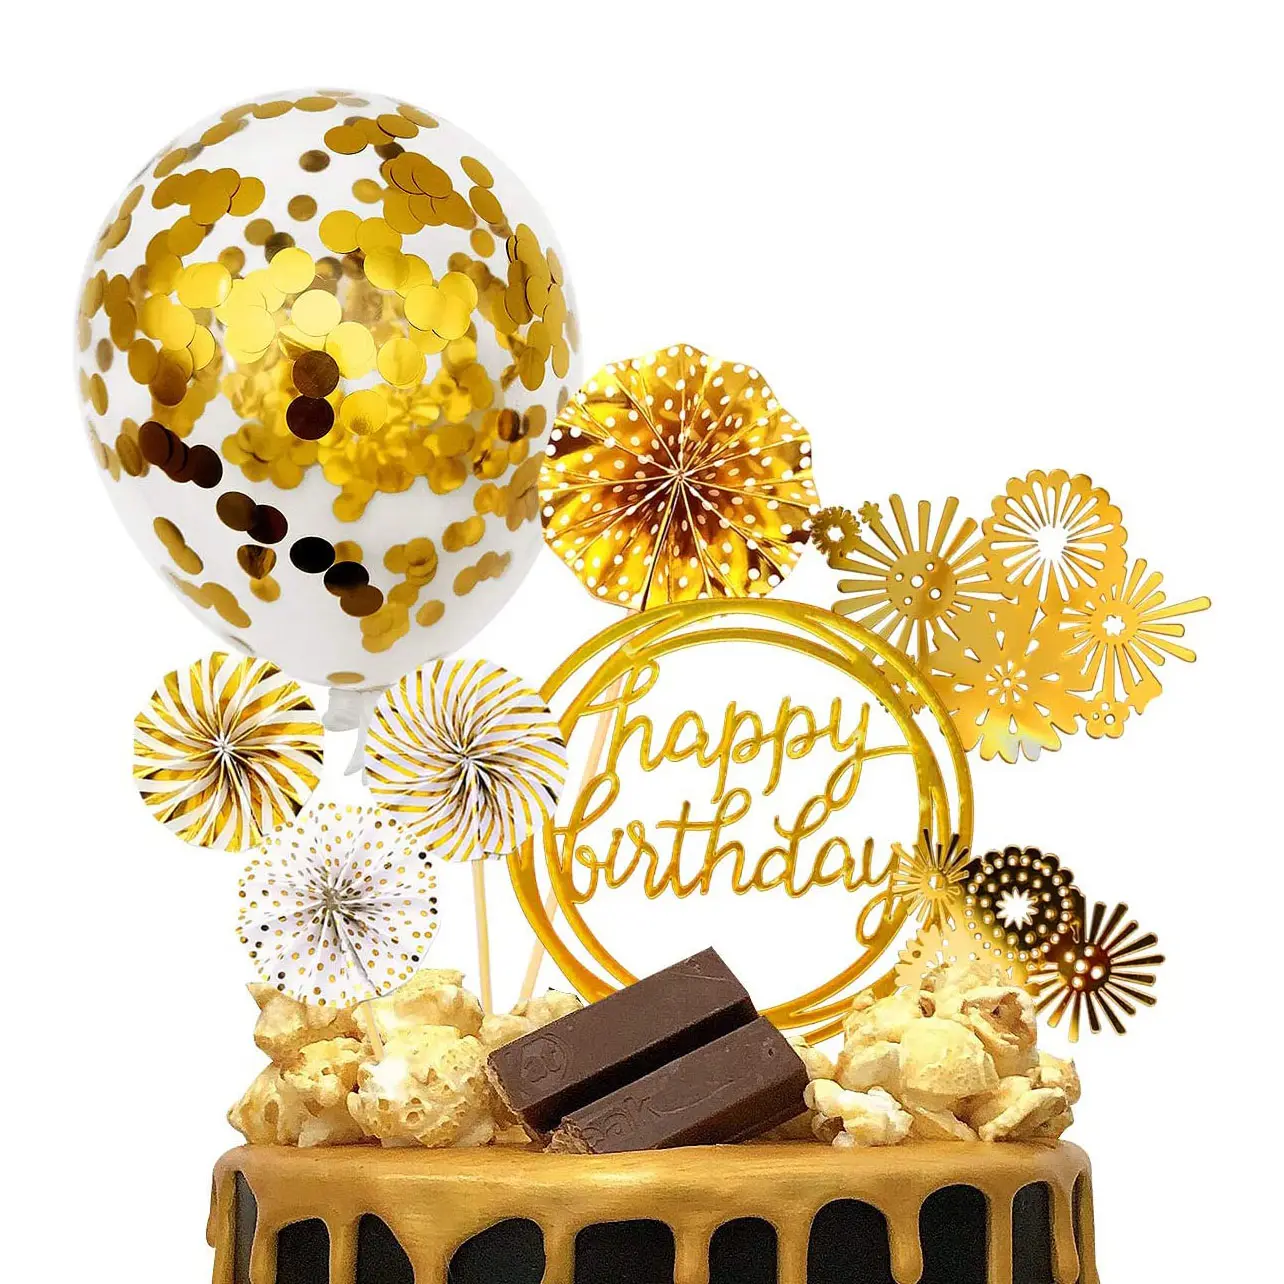 Nicro Gold Thema Alles Gute zum Geburtstag Papier Fans Banner Mini Konfetti Ballon Feuerwerk Party Golden Cupcake Cake Topper Dekoration